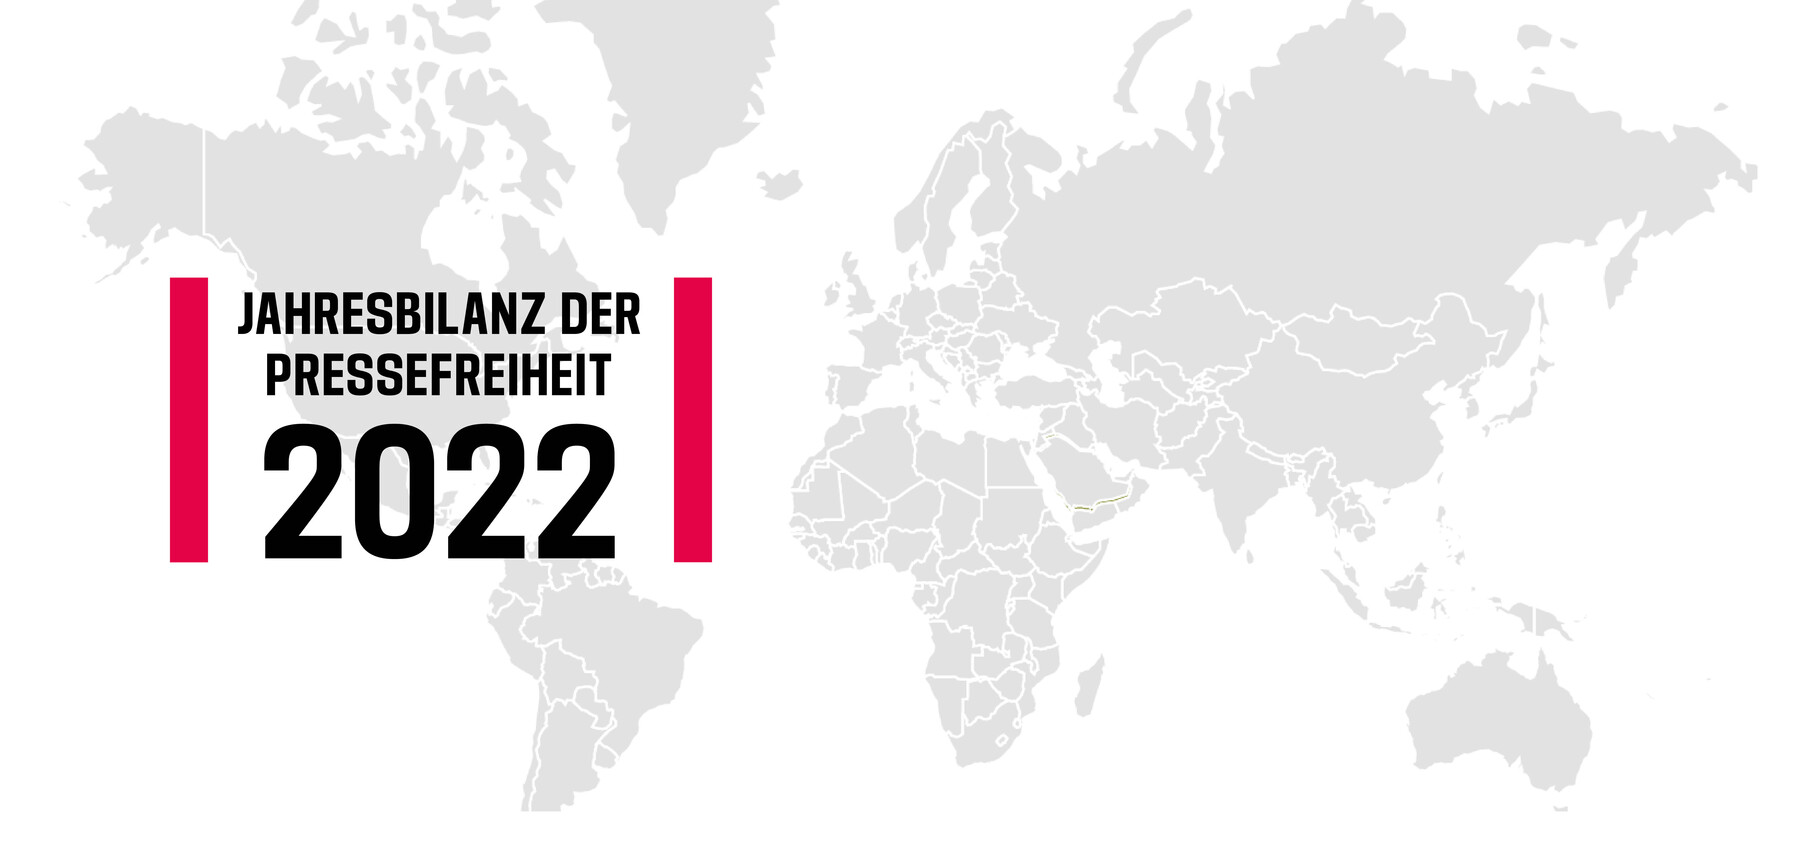 Fette Lettern vor dem Hintergrund eines Weltkartenausschnitts: Jahresbilanz der Pressefreiheit 2022